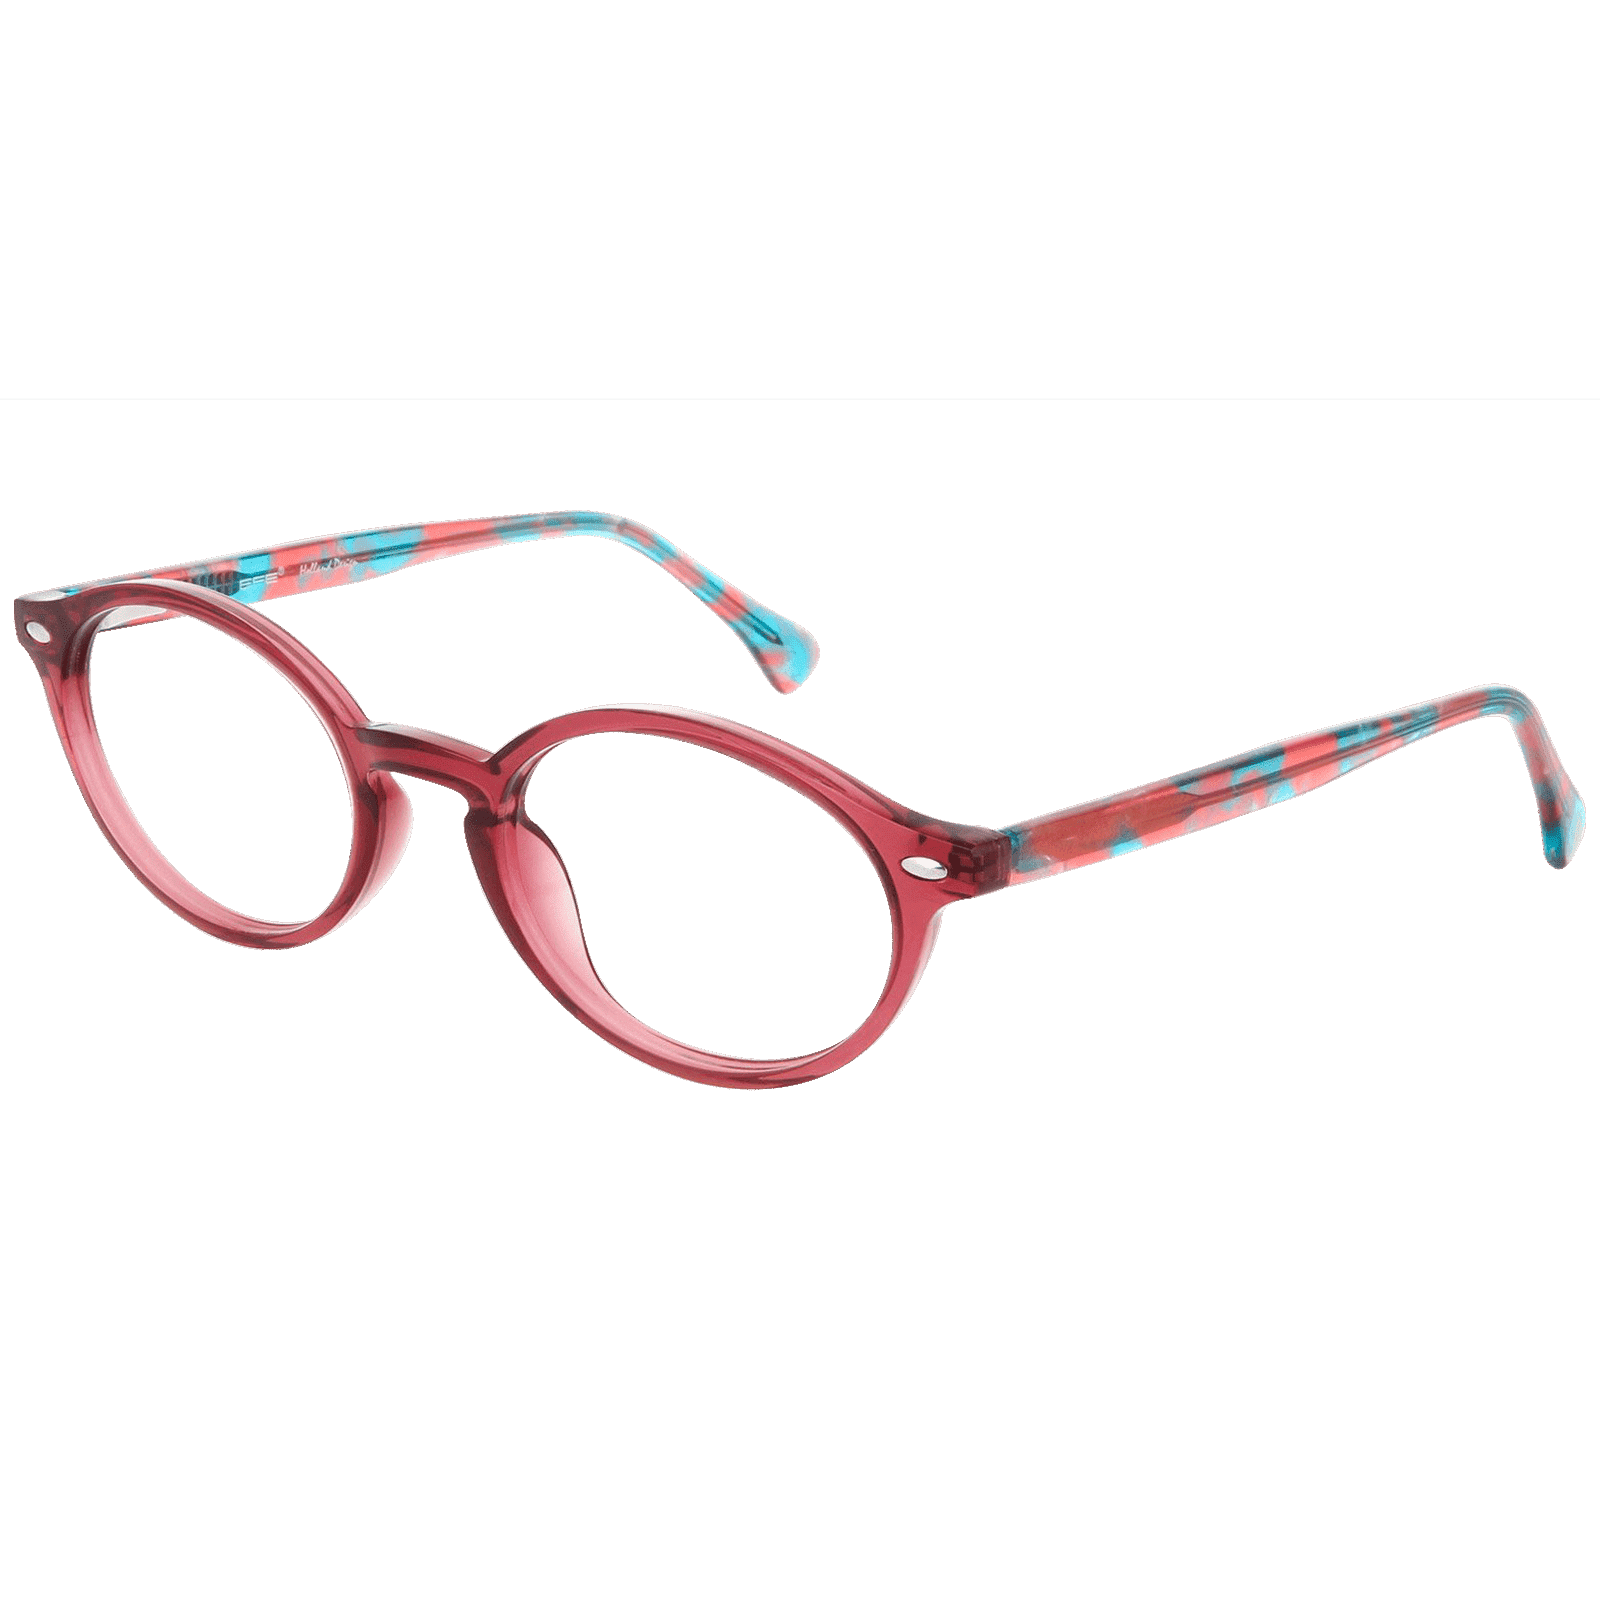 Heidi - Oval Red Reading Glasses for Women